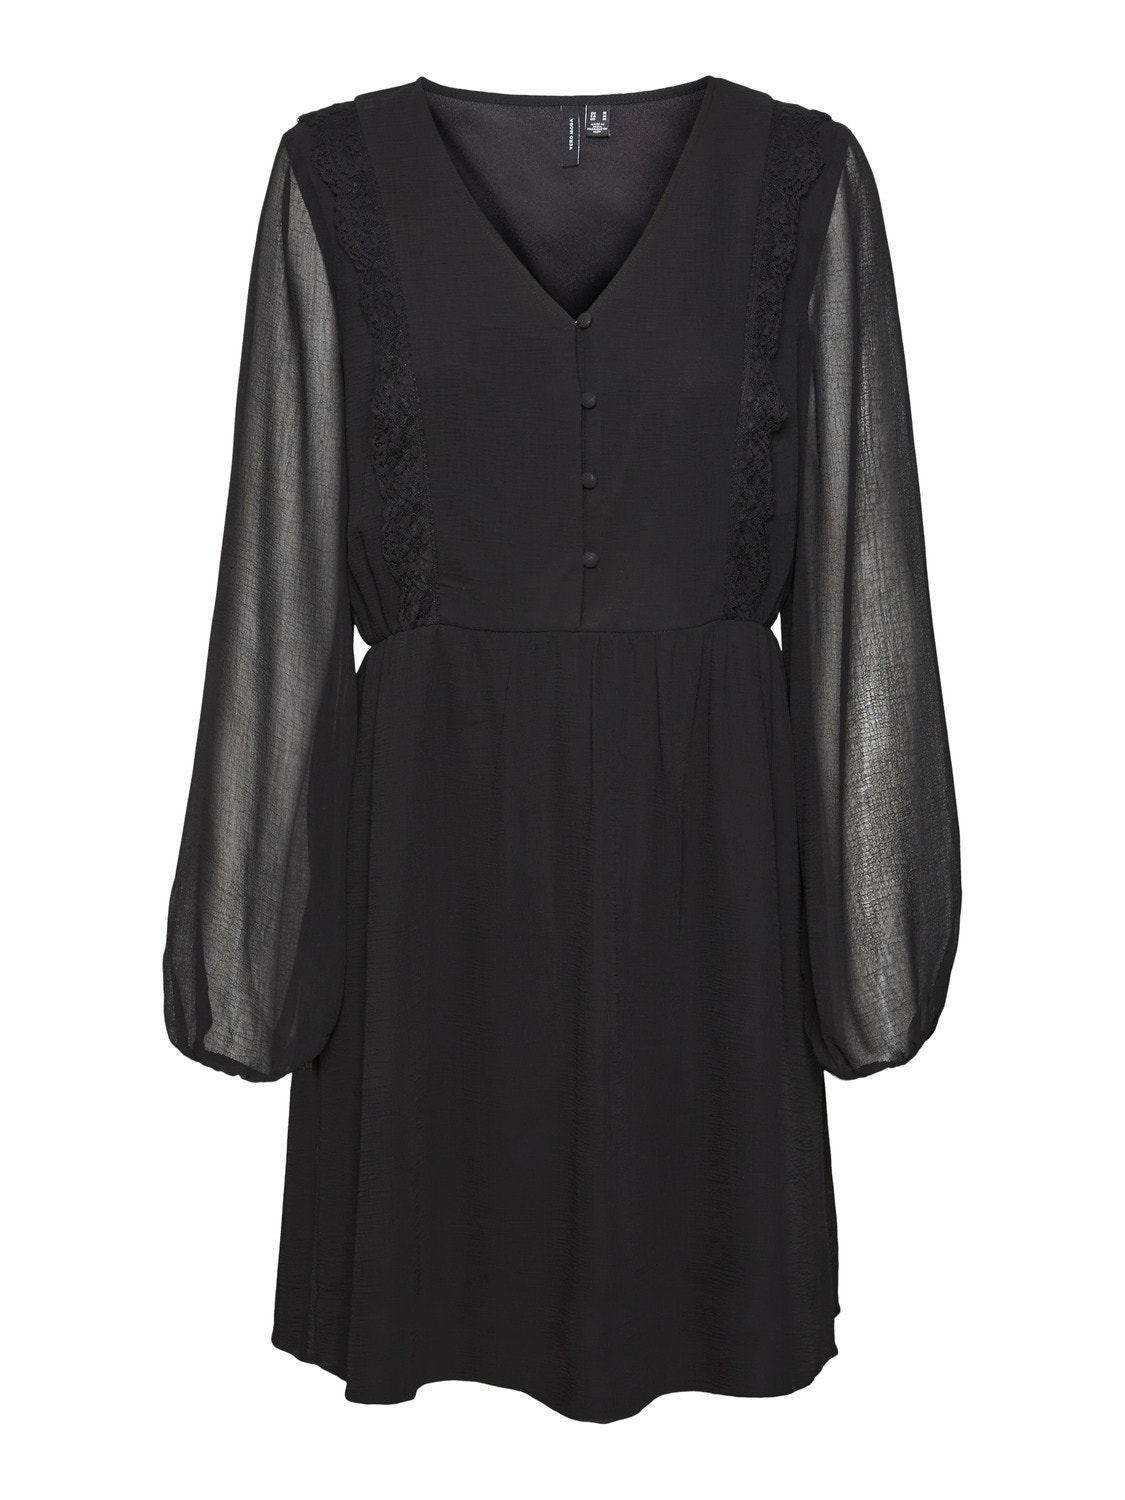 Vero Moda VMJUNA Short dress -Black - 10314040